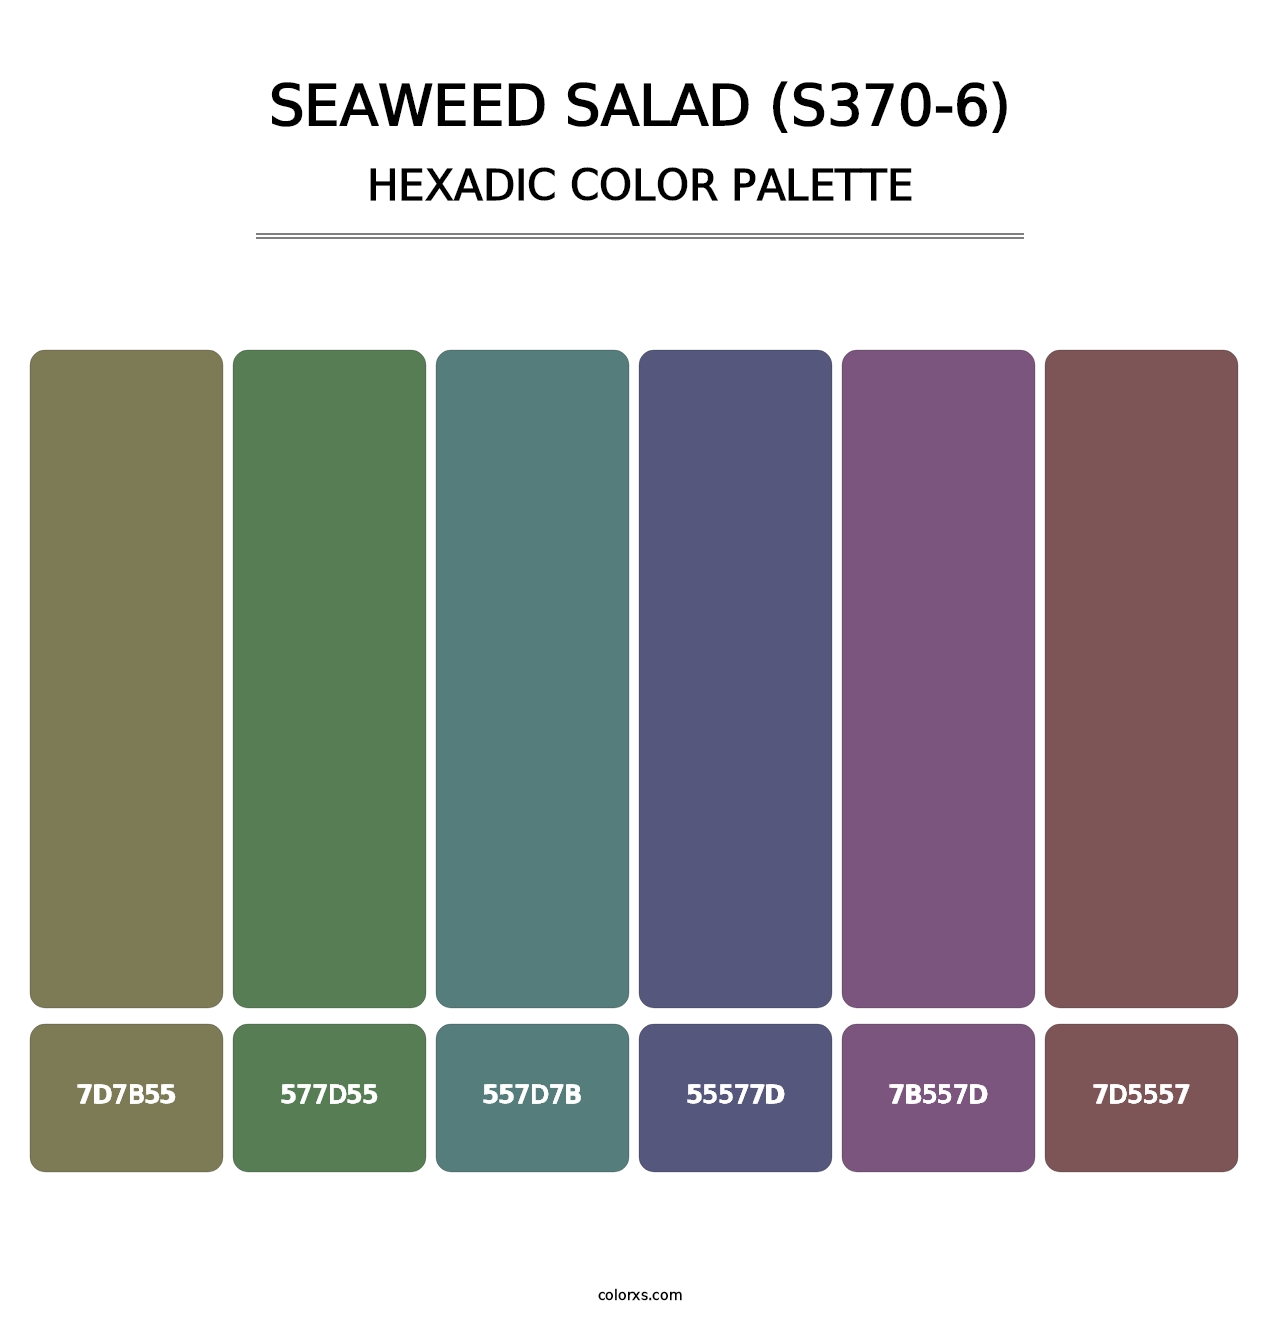 Seaweed Salad (S370-6) - Hexadic Color Palette